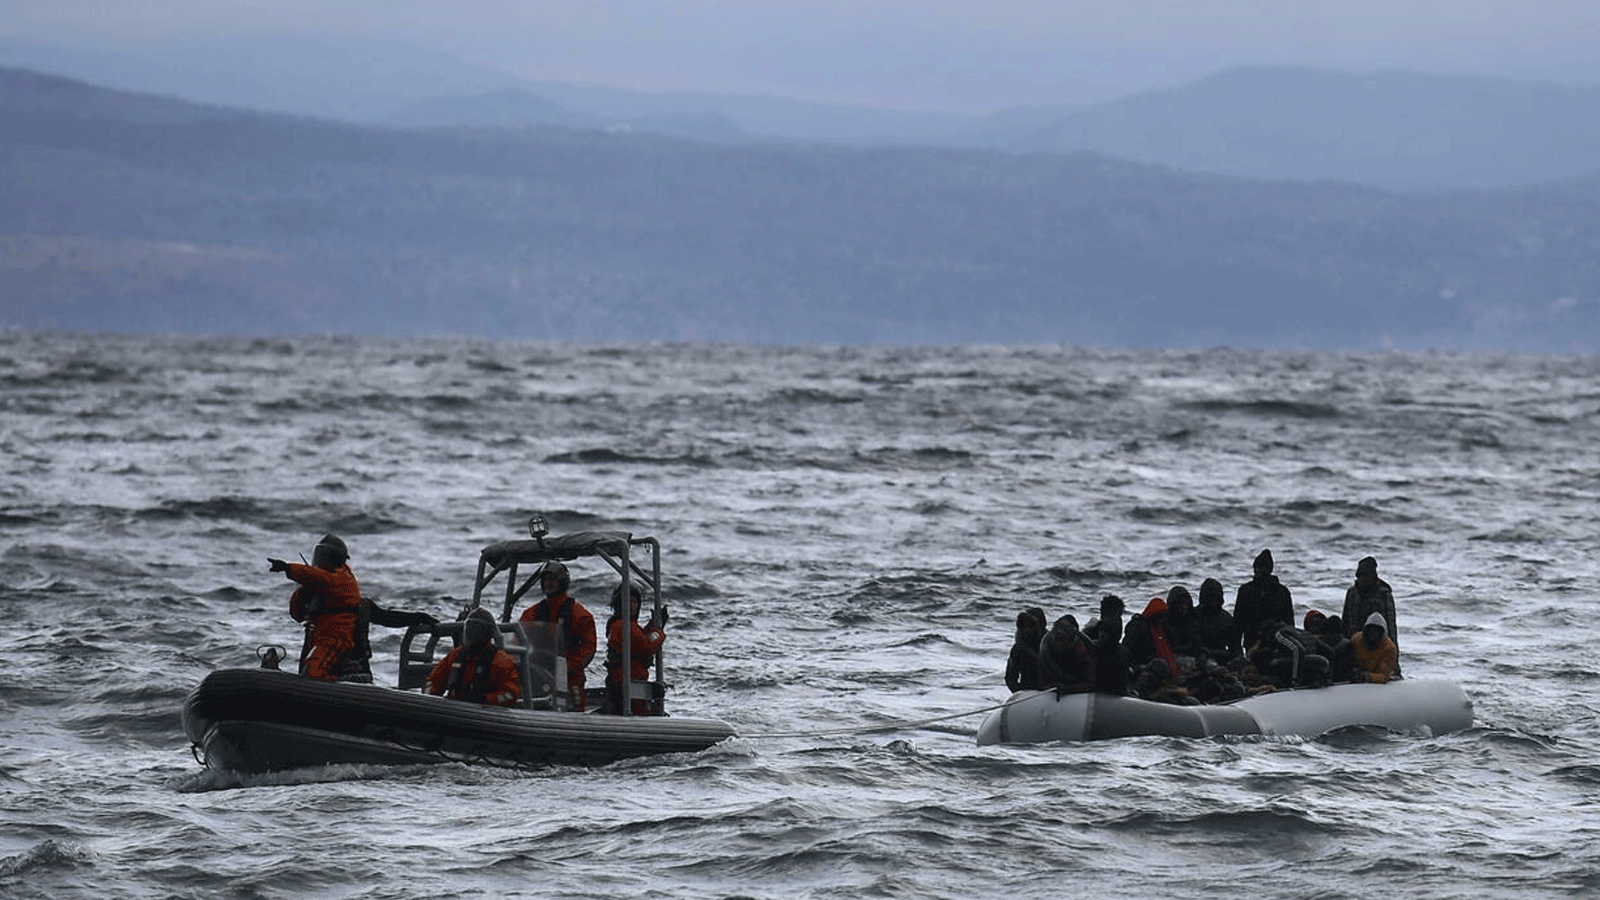 صورة ارتفاع عدد ضحايا غرق قاربين قبالة اليونان إلى 21.. والبحث جارٍ عن عشرات المفقودين